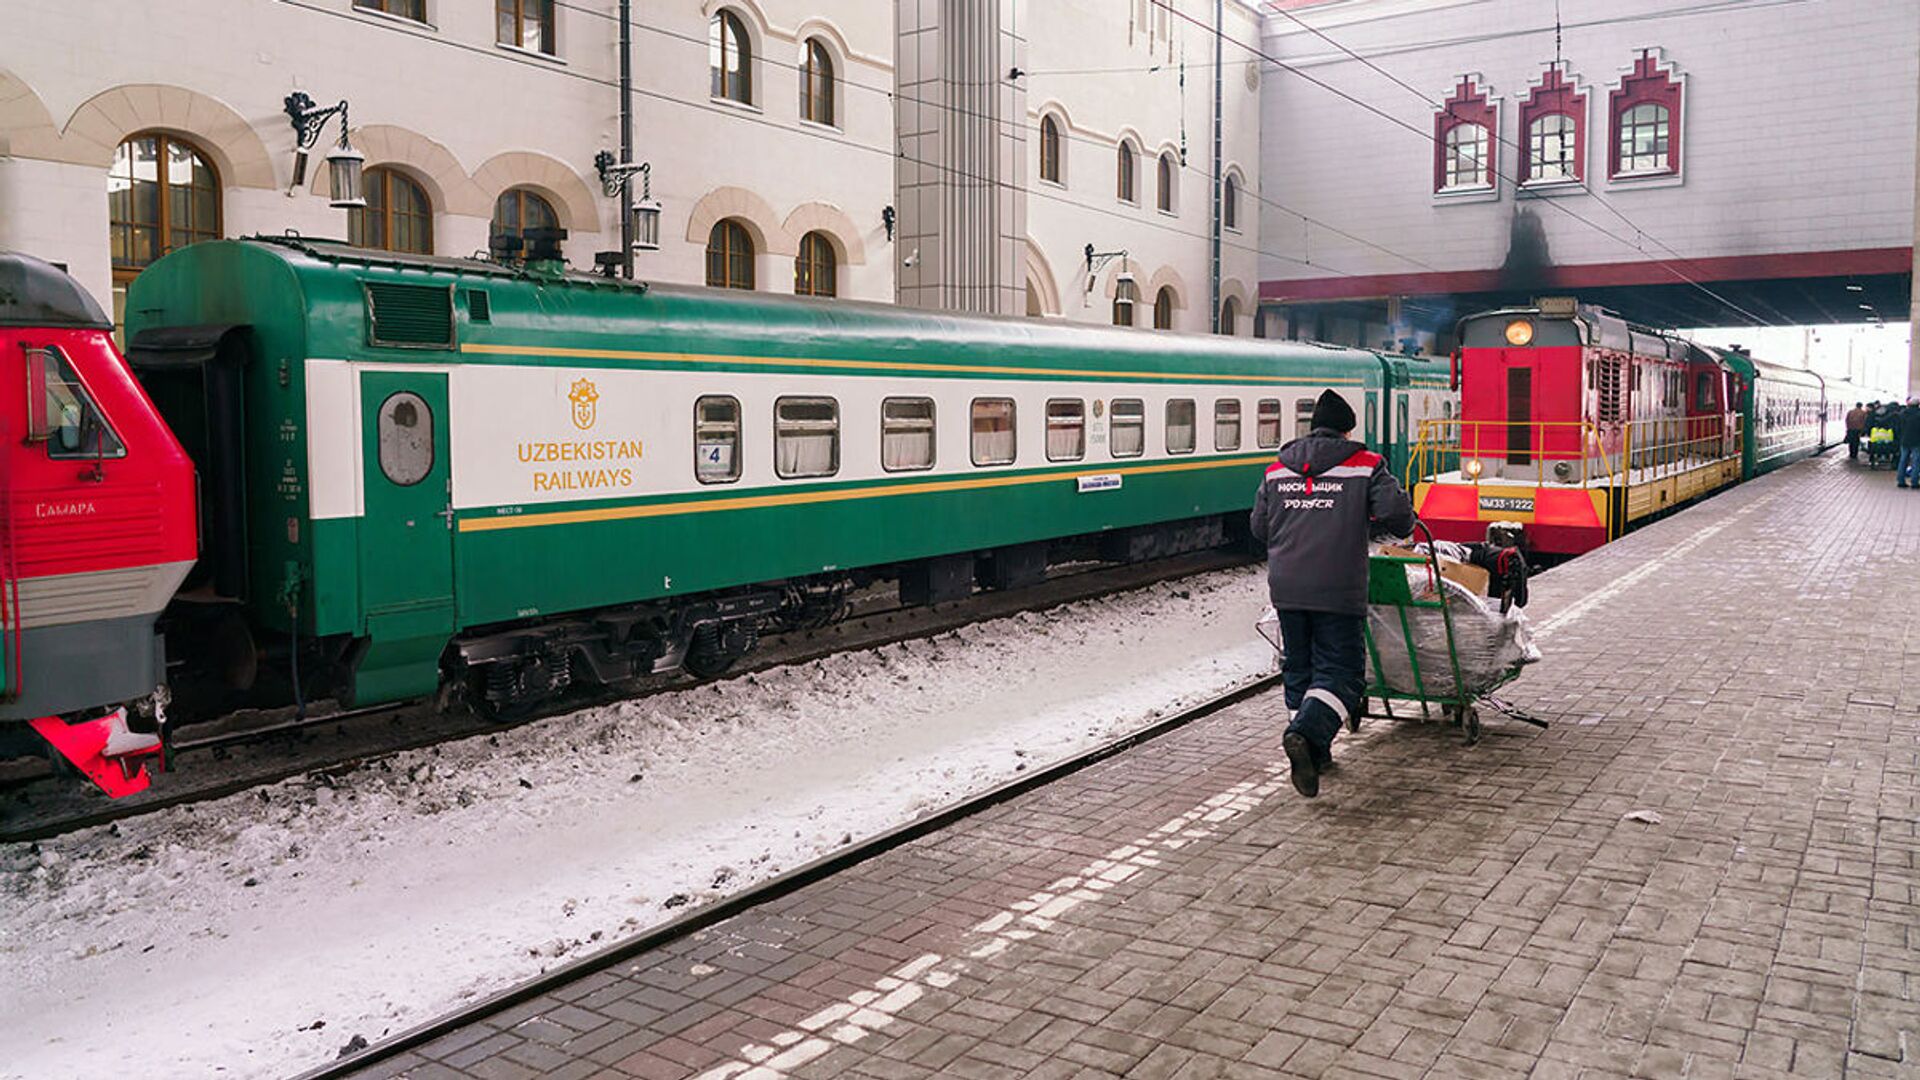 Поезд из Узбекистана на железнодорожном вокзале в Москве - Sputnik Ўзбекистон, 1920, 02.09.2021